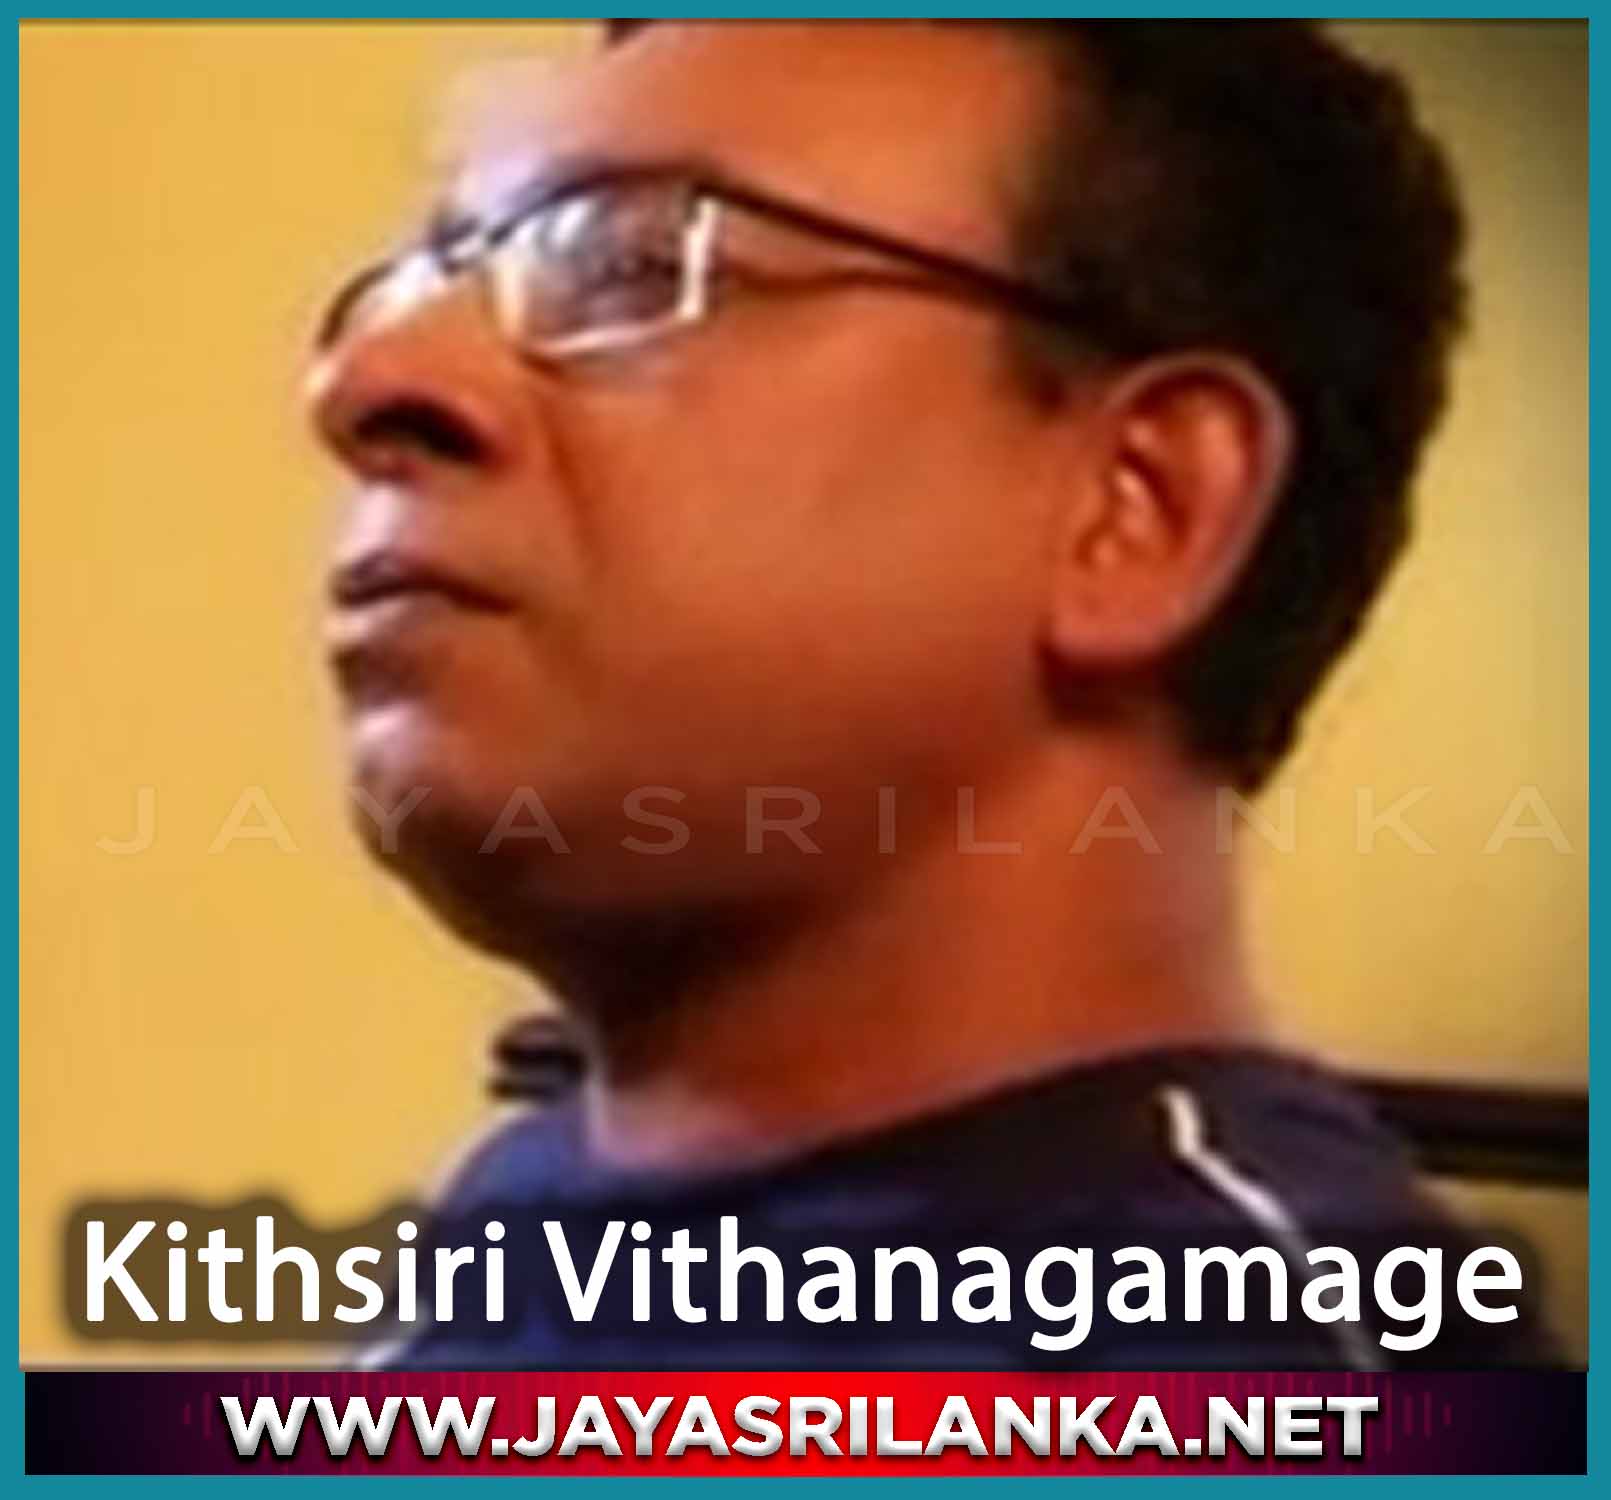 Oba Nathiwa Gewunu Raya - Kithsiri Vithanagamage mp3 Image